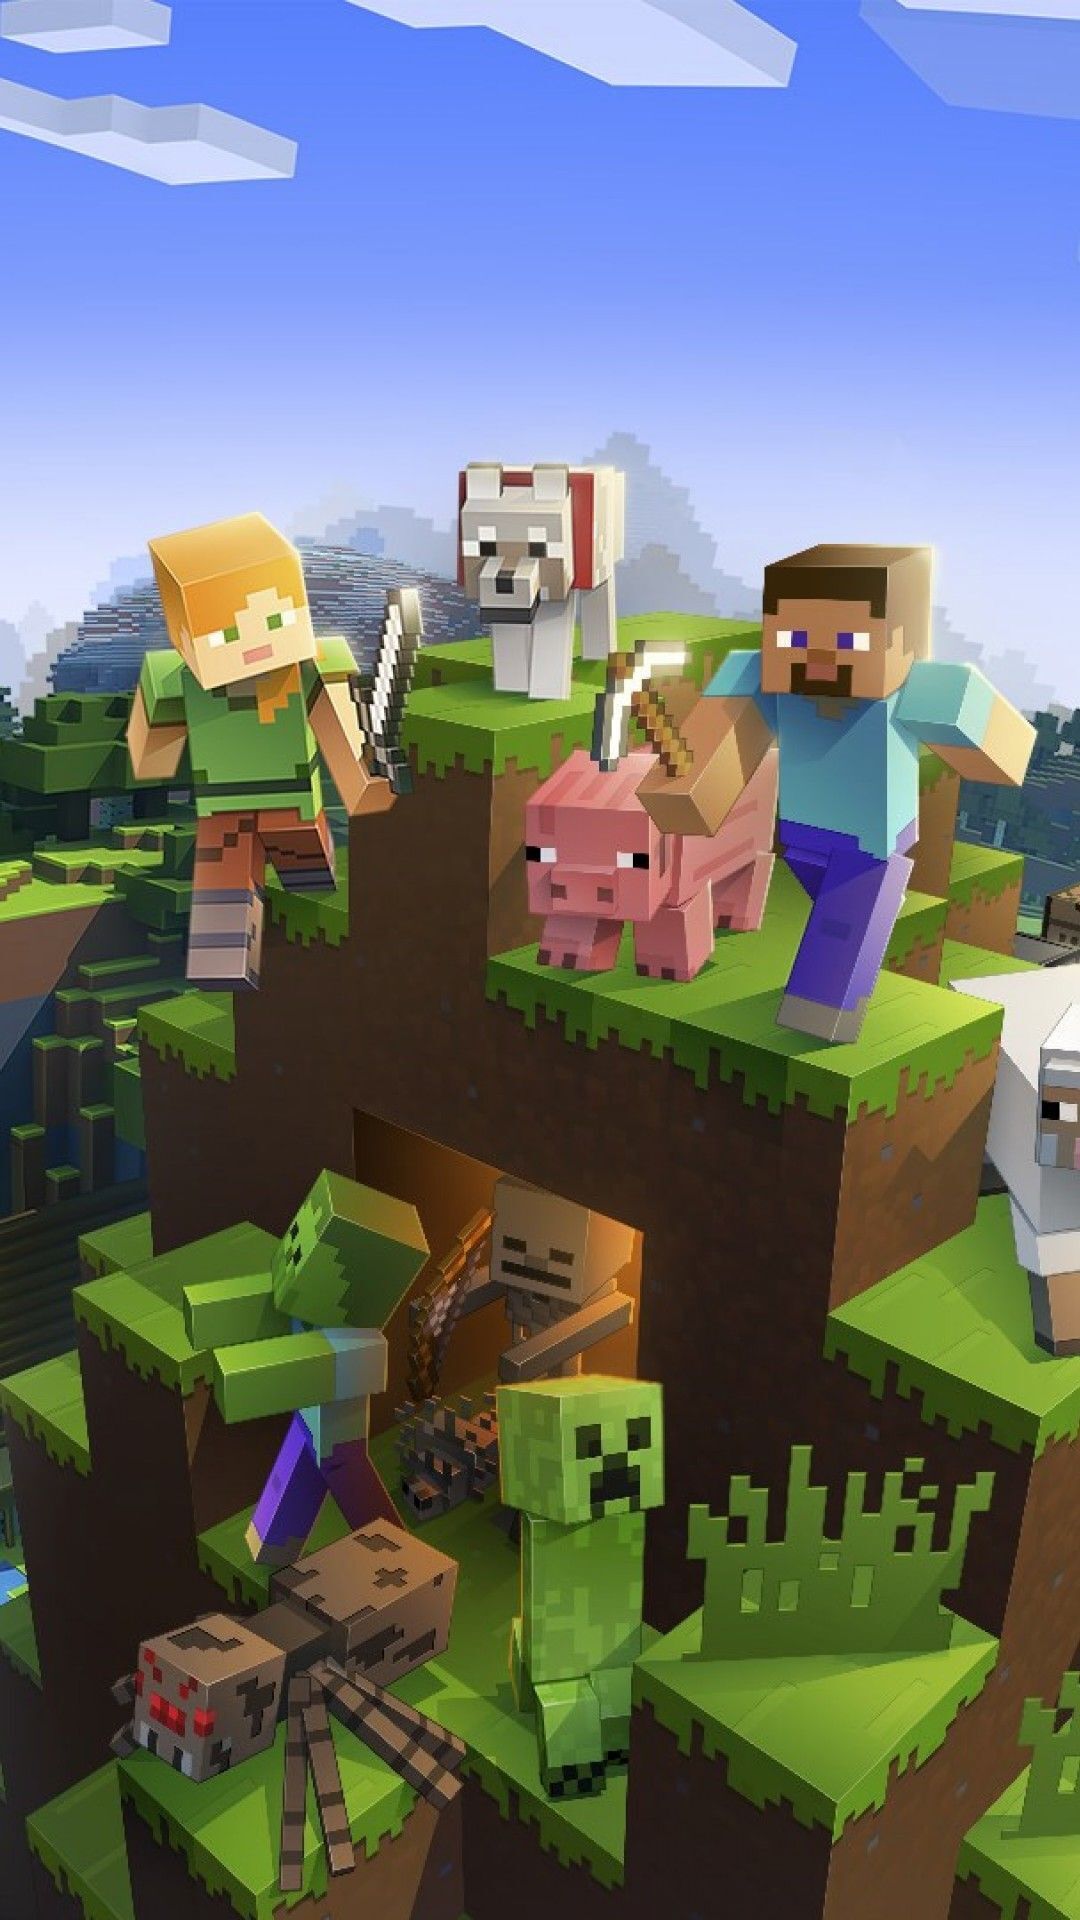 Bạn đang tìm kiếm hình nền Minecraft độc đáo? Đừng bỏ lỡ cơ hội để được lựa chọn những hình nền đáng yêu nhất trong thế giới Minecraft. Với đa dạng về màu sắc và hình ảnh, bạn đảm bảo sẽ tìm thấy hình nền phù hợp với phong cách của mình.